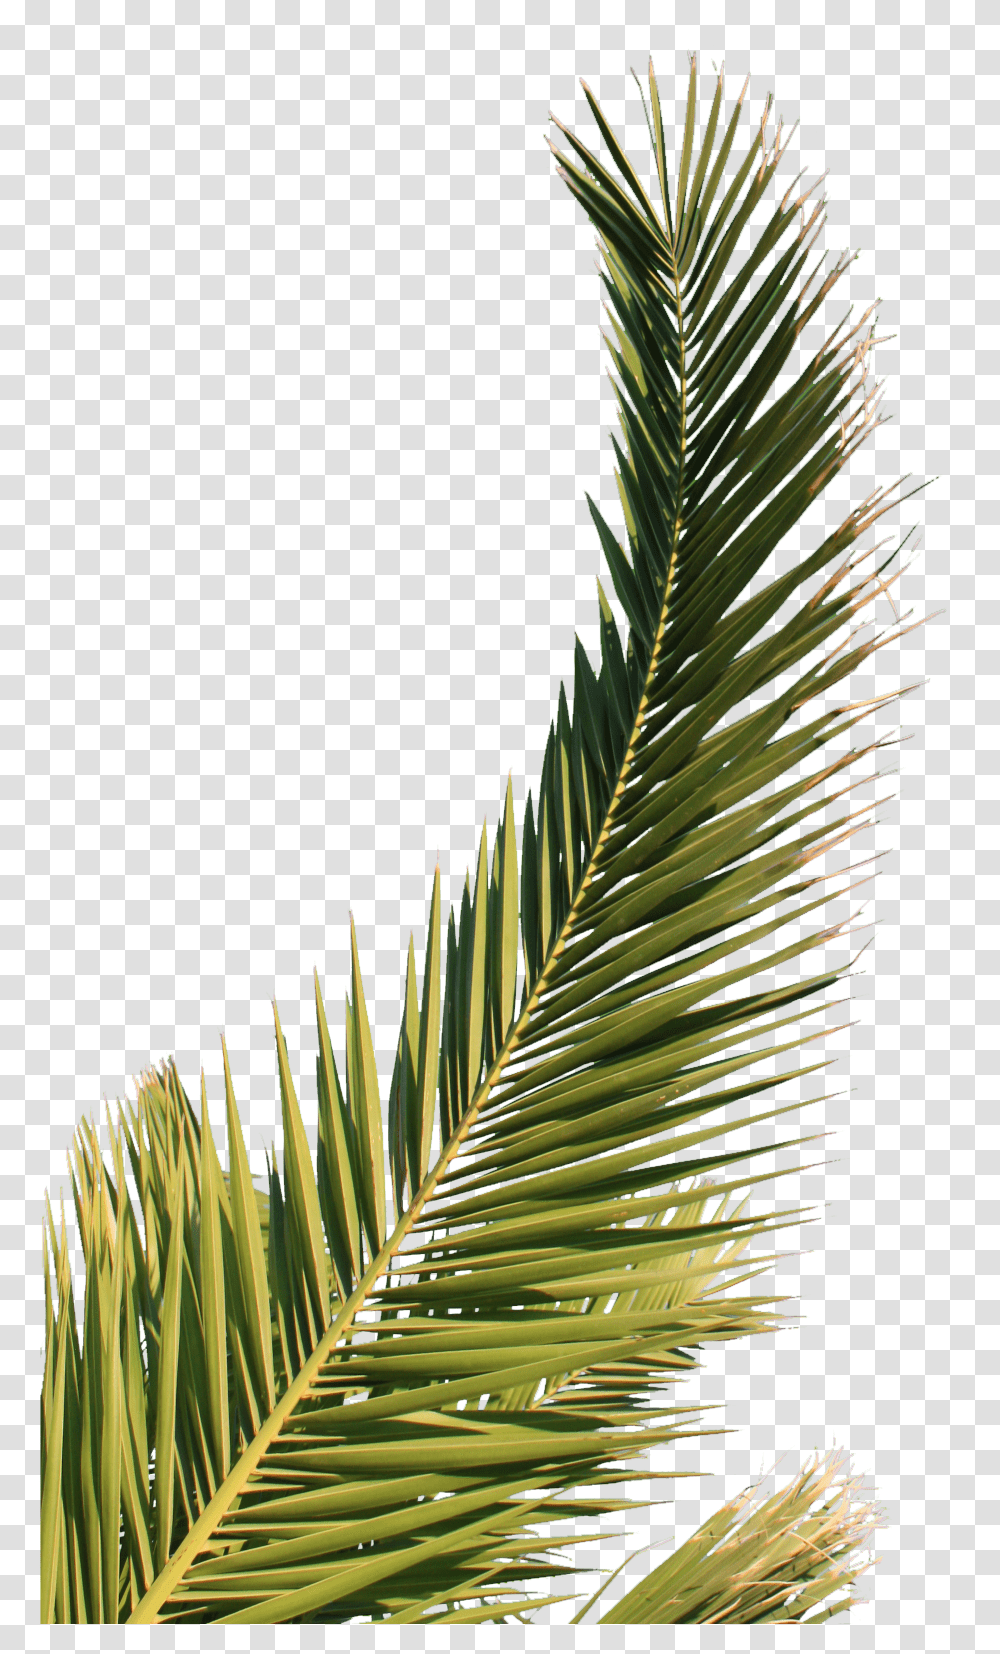 Download Hd Palm Tree Leaf Feuille De Palmier Palm Tree, Plant, Green, Vegetation, Arecaceae Transparent Png